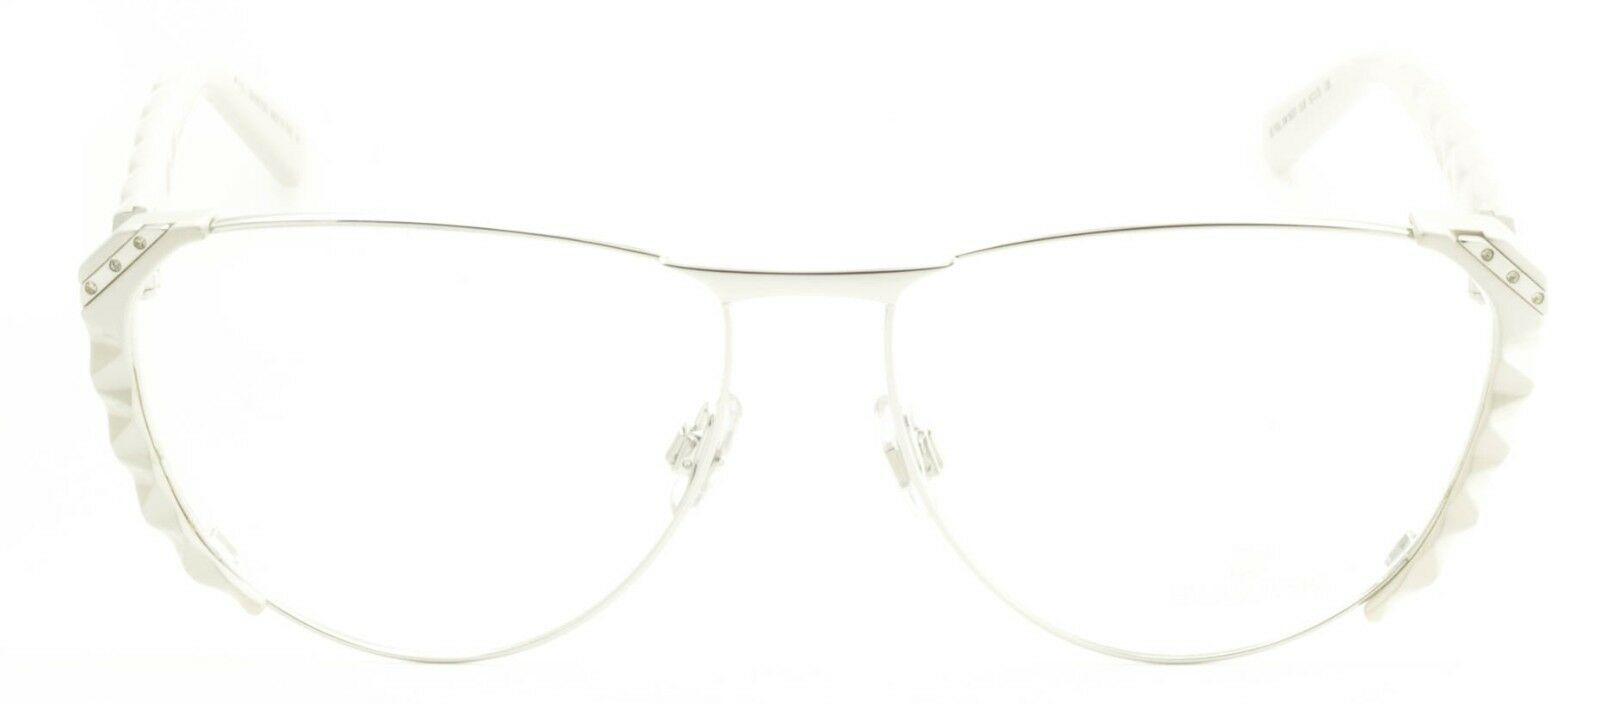 Review] ¥95 Swarovski Wine Glasses (2-pack) 🍷 : r/FashionReps